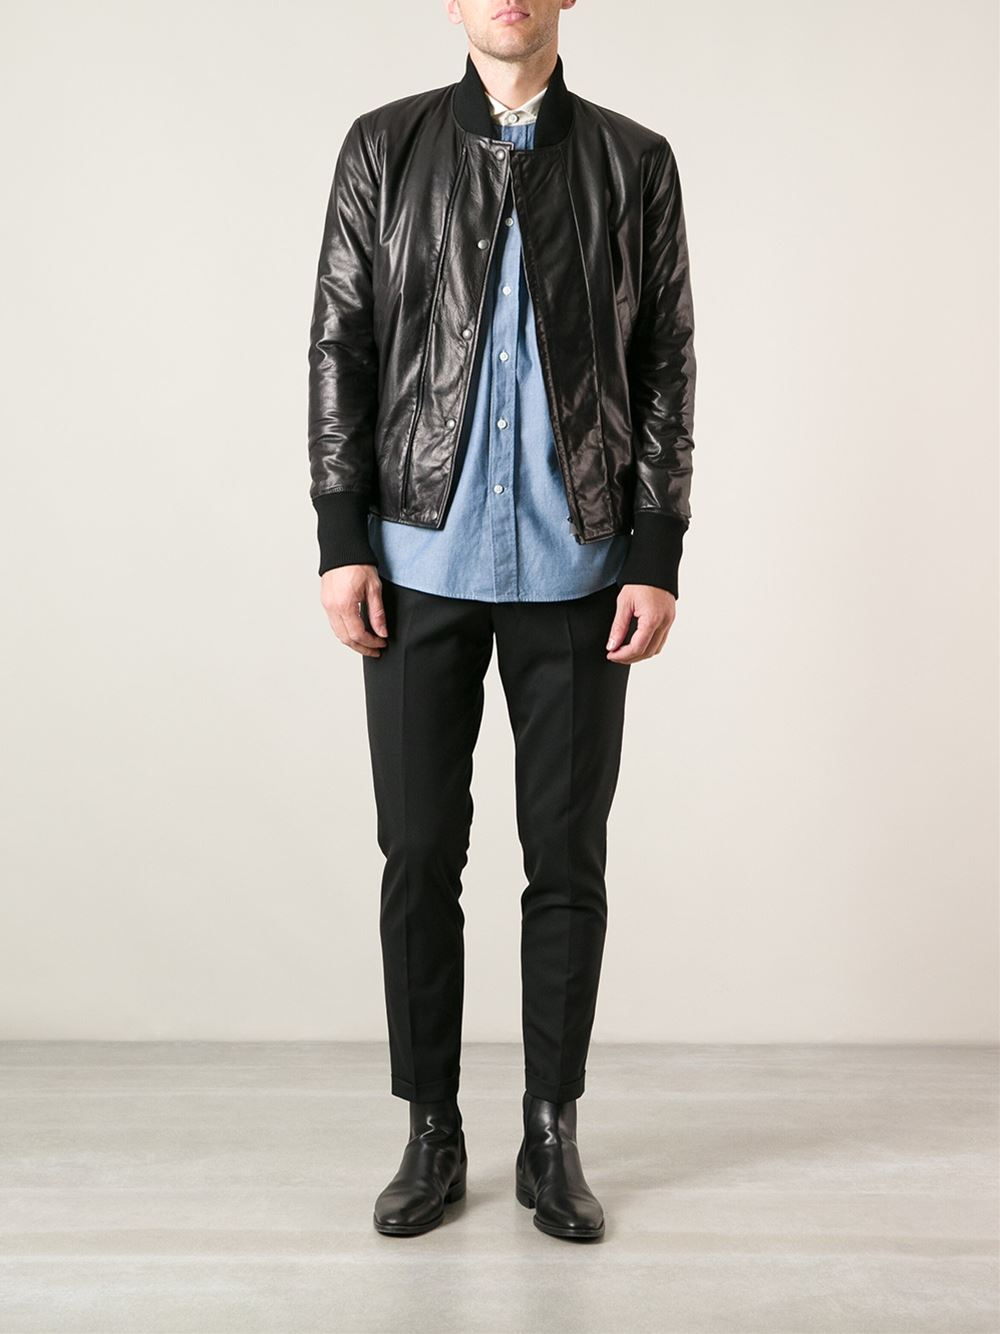 Bottega Veneta Leather Jacket in Black for Men - Lyst